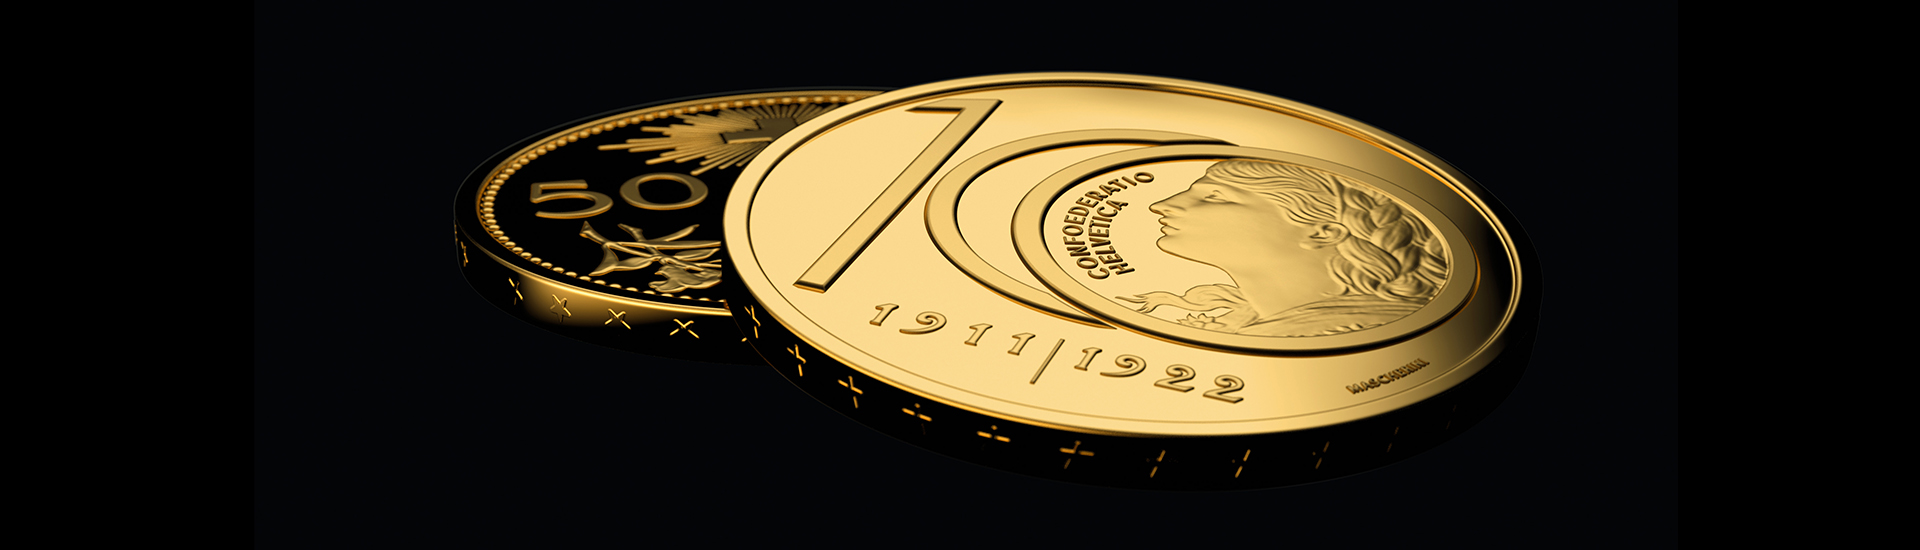 Moneta speciale 100 anni dall'ultimo conio di Vreneli da 10 franchi